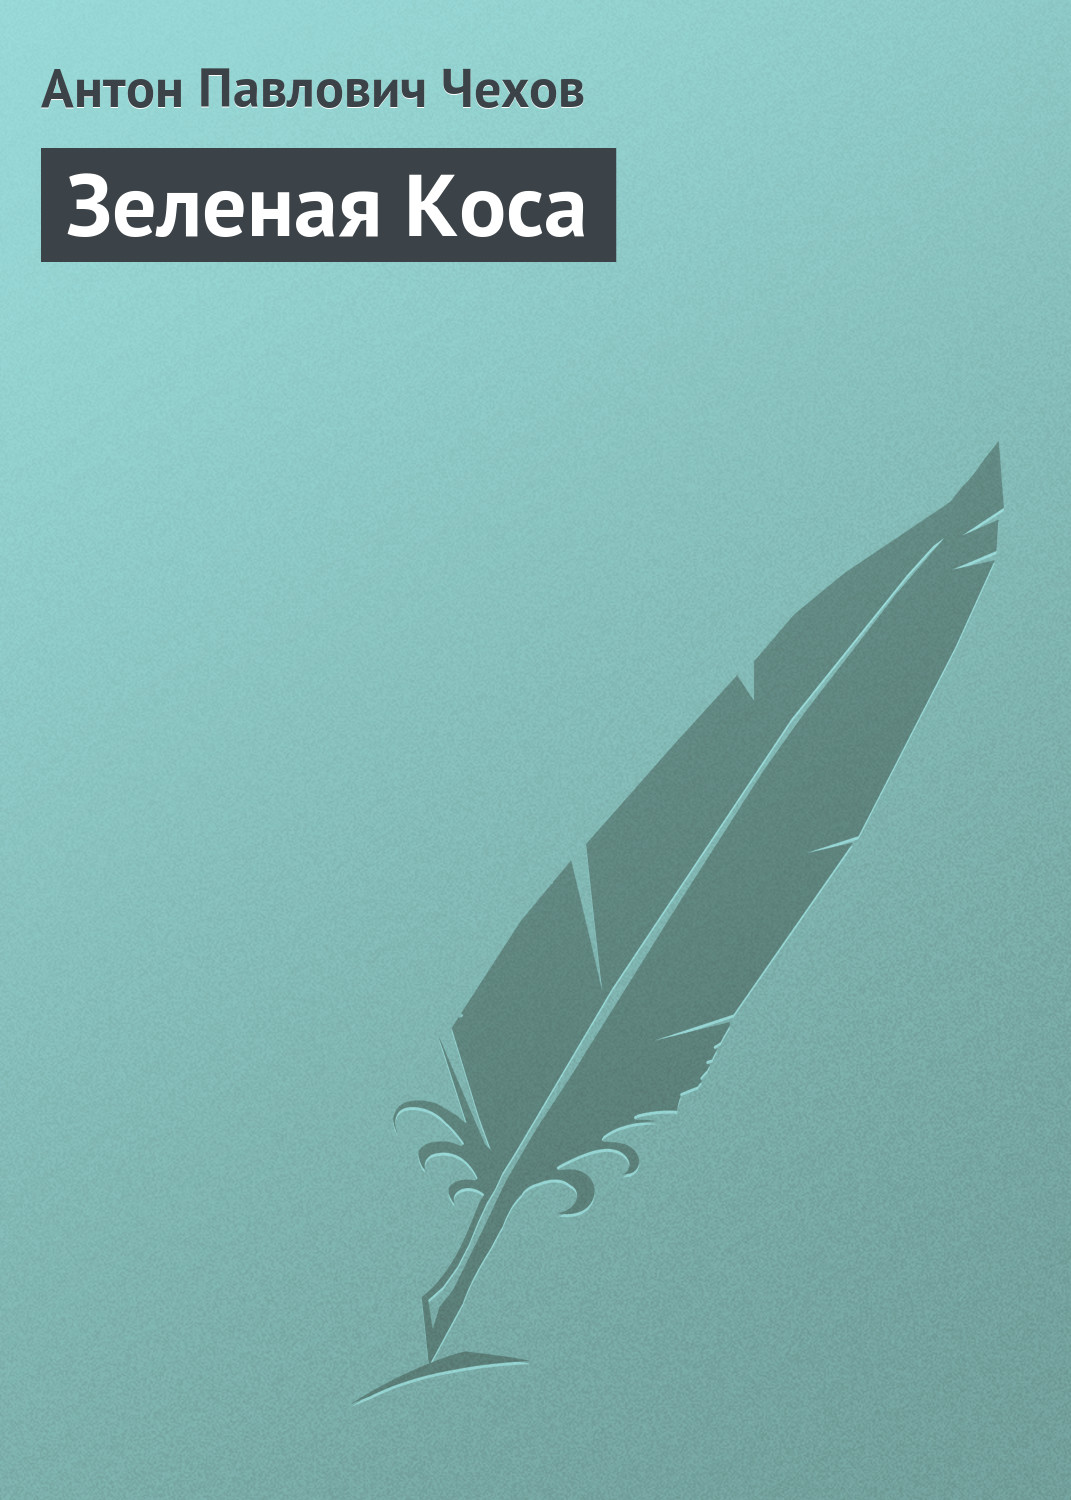 Книга Зеленая Коса из серии , созданная Антон Чехов, может относится к жанру Рассказы, Литература 19 века. Стоимость электронной книги Зеленая Коса с идентификатором 146983 составляет 0.99 руб.